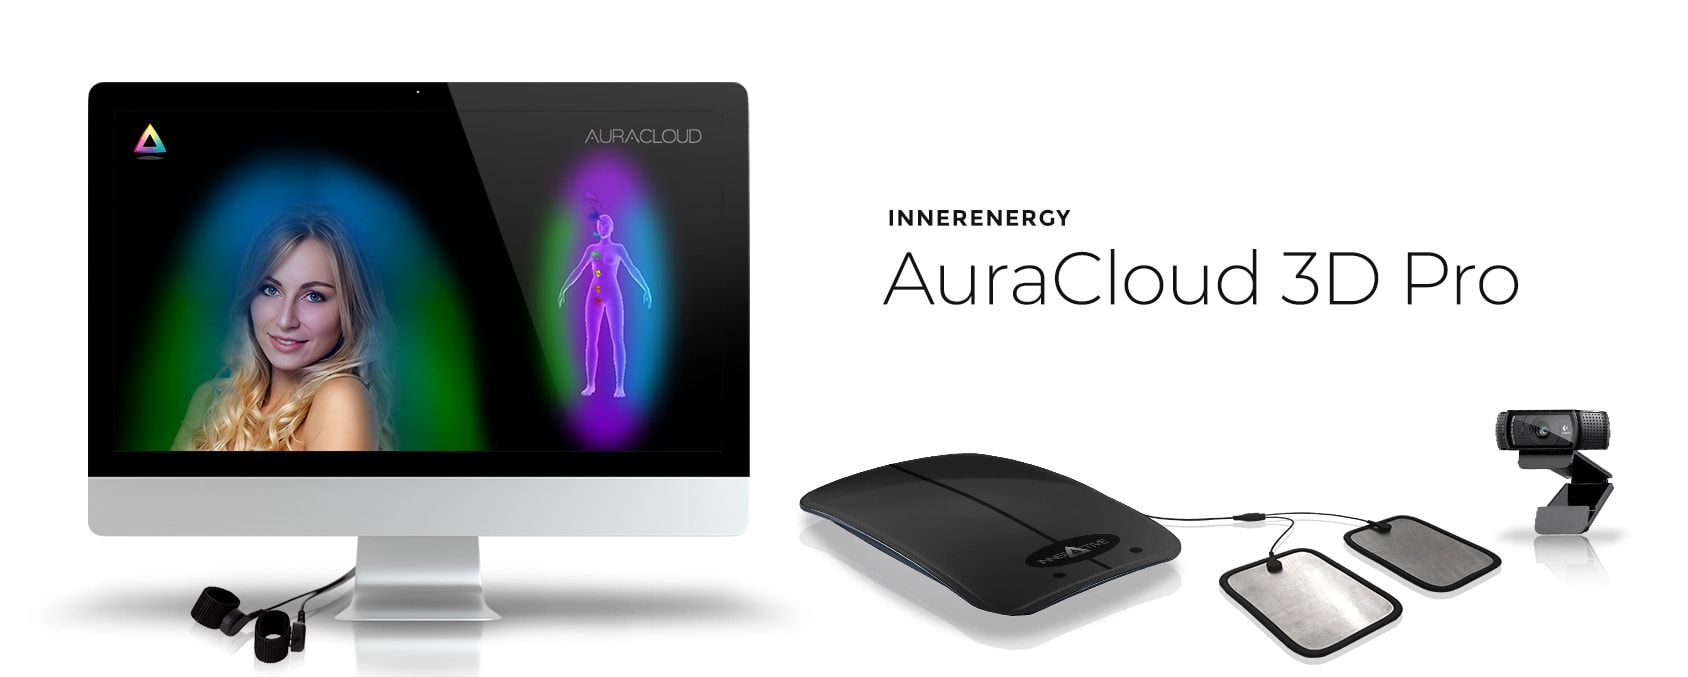 AuraCloud 3D Pro